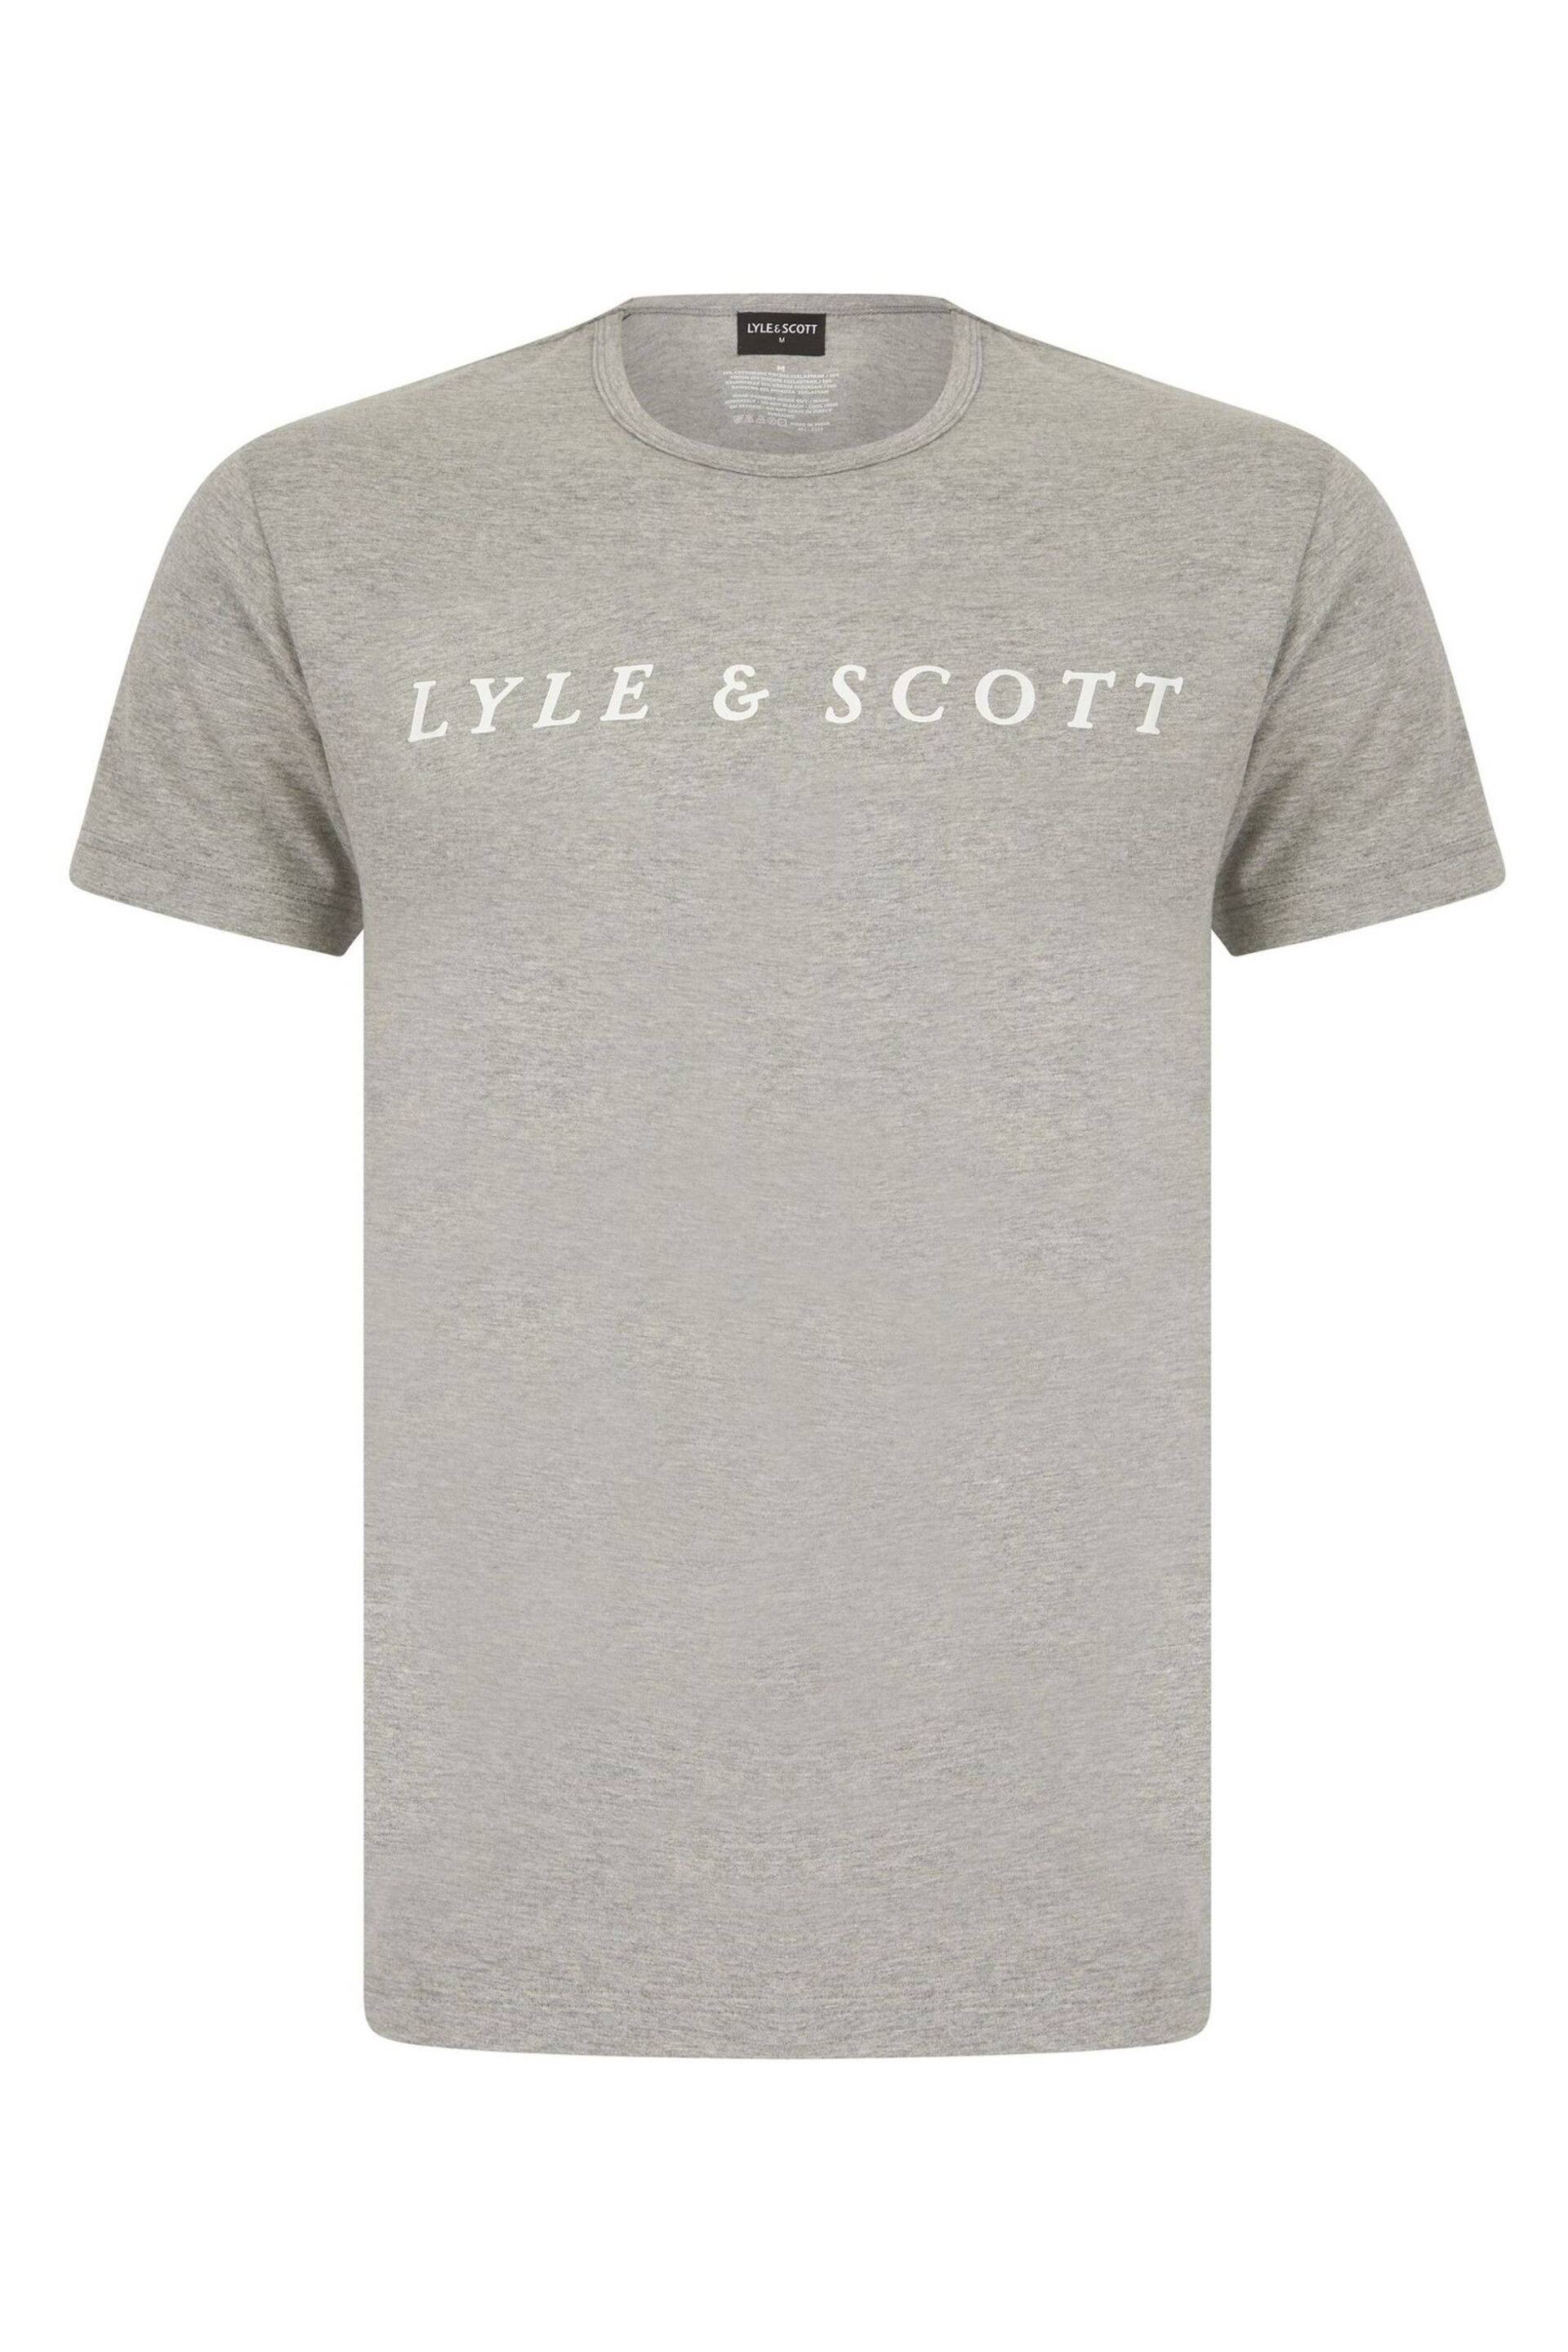 Lyle & Scott Oakley Loungewear Set - Image 2 of 6